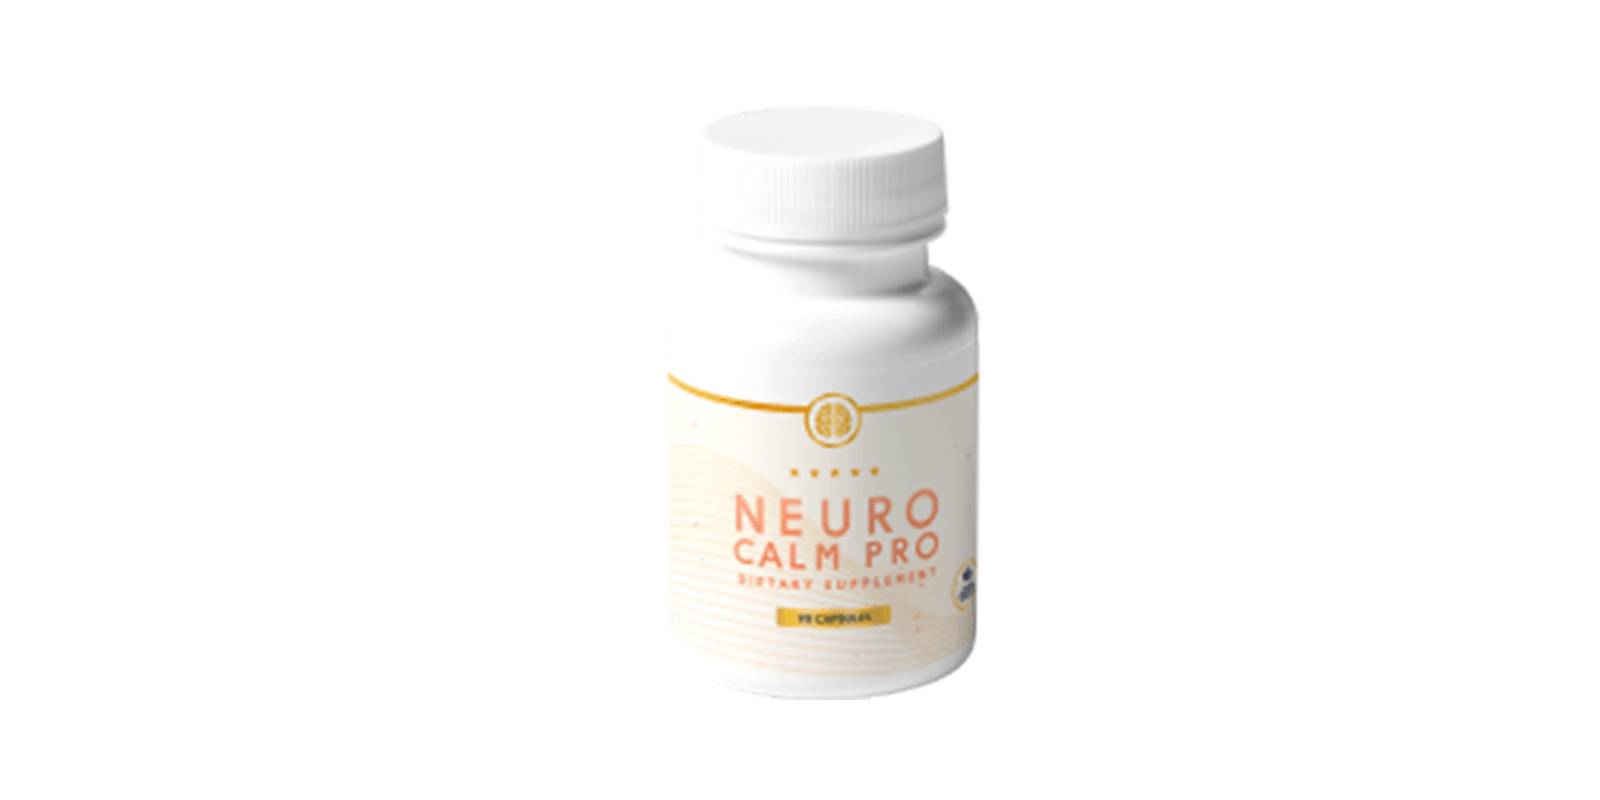 Neuro Calm Pro Reviews